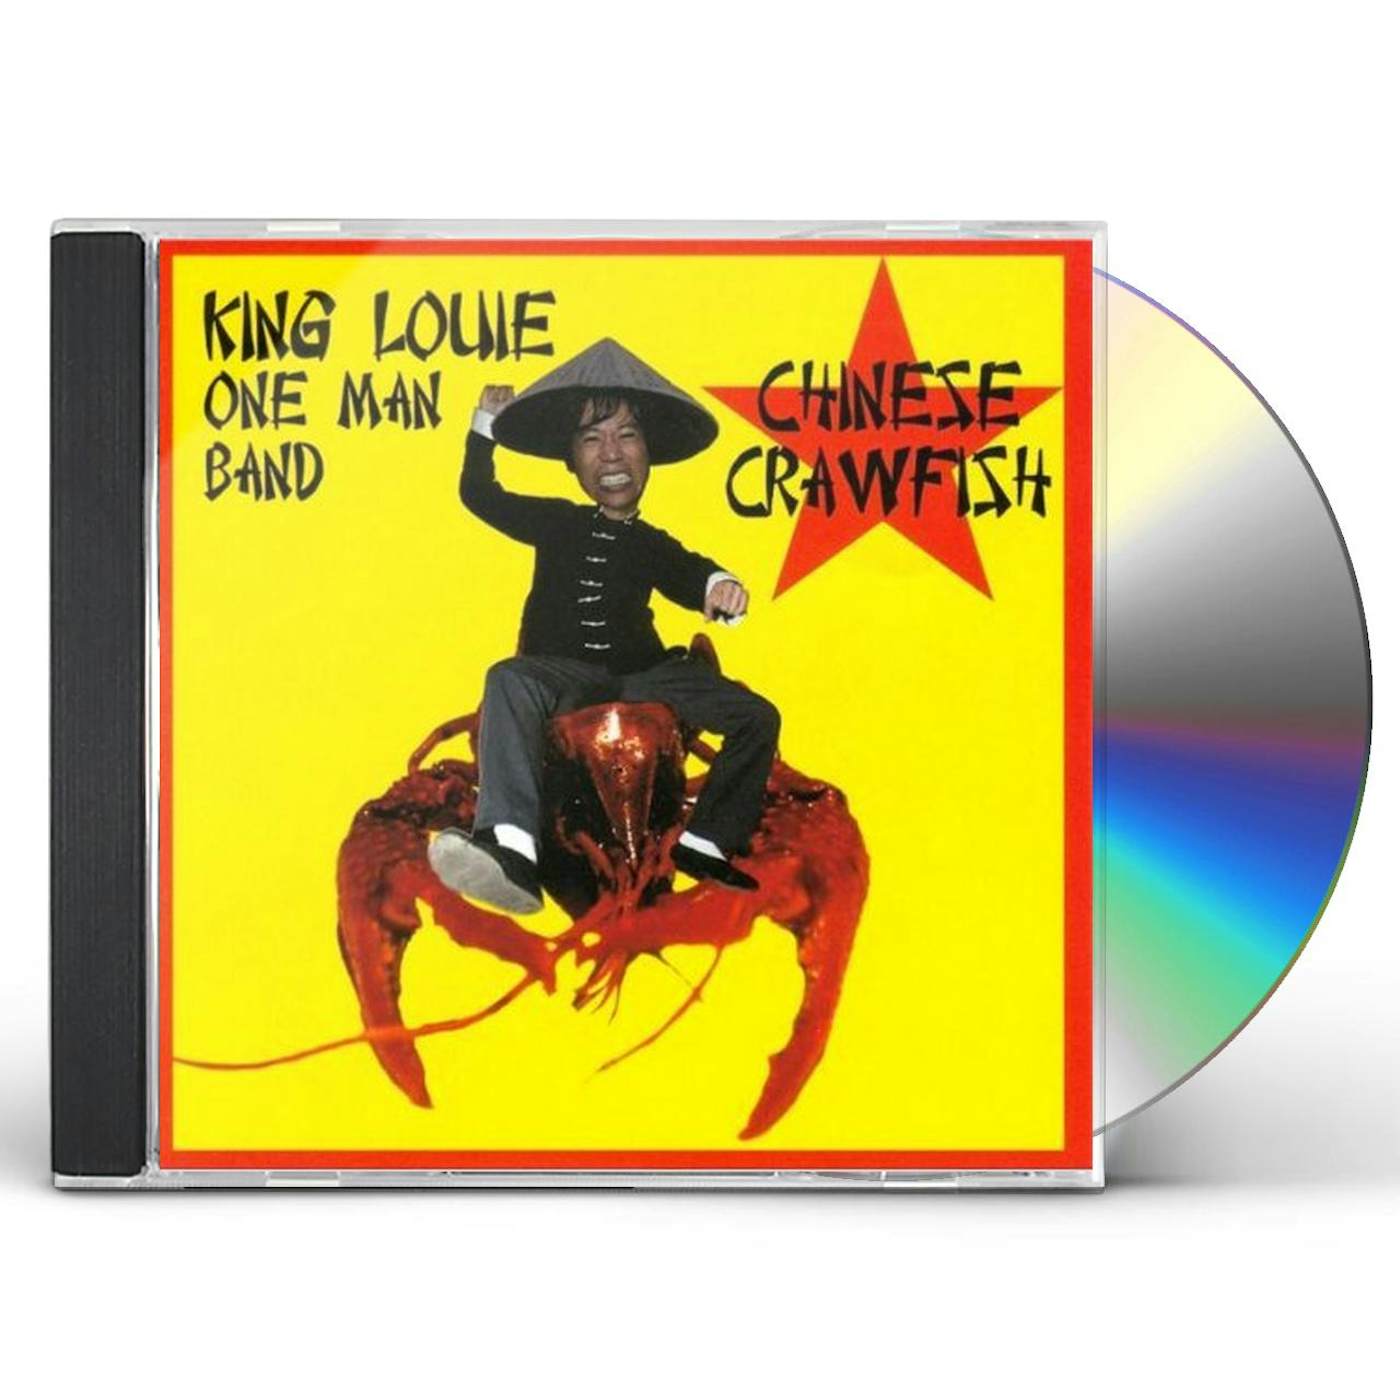 King Louie One Man Band CHINESE CRAWFISH CD